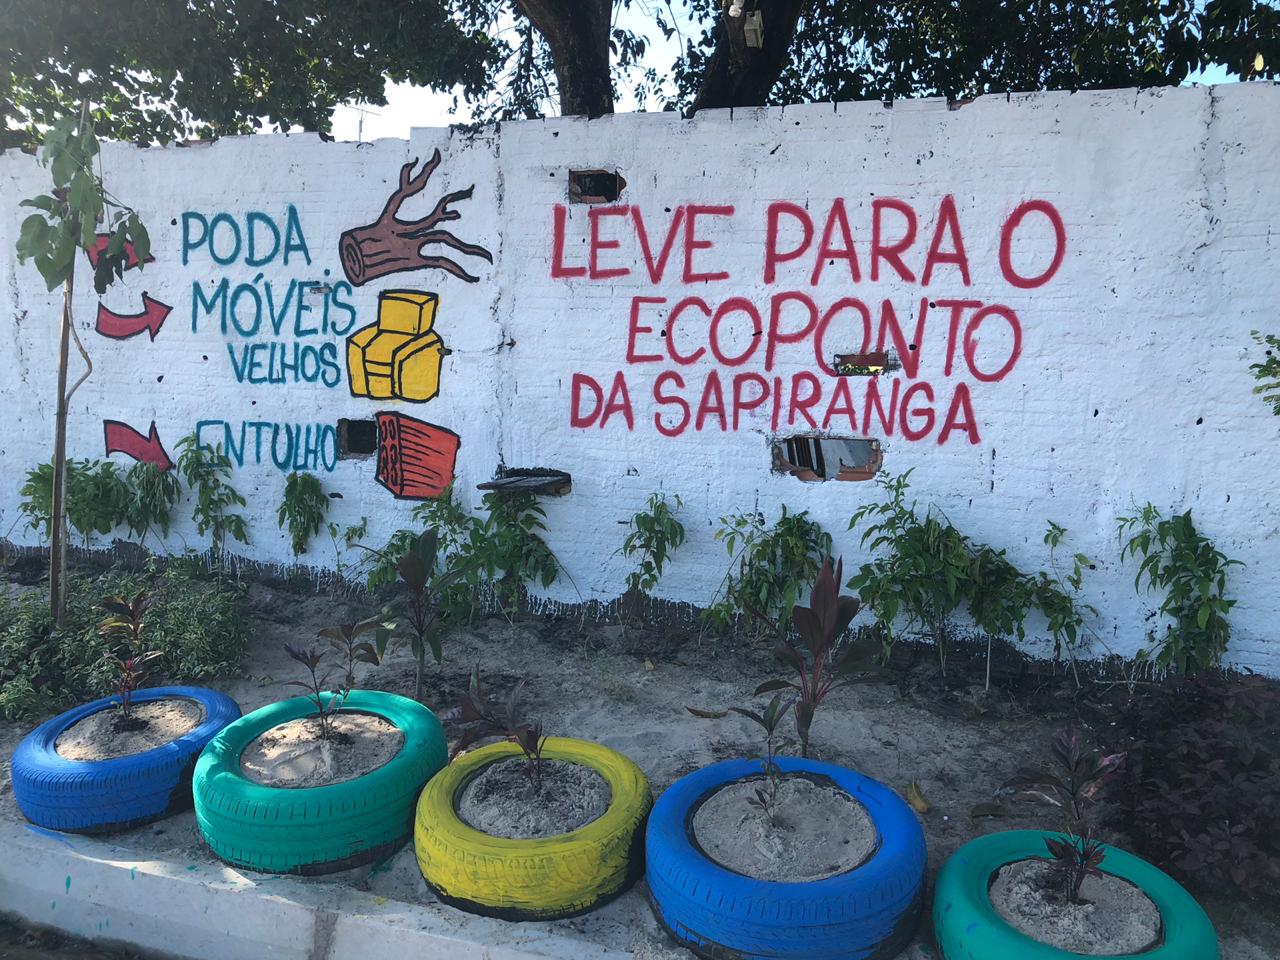 quatro pneus em calçadas com areias e mudas dentro e muro com grafite ao fundo com frase 'leve o lixro para o ecoponto da sapiranga'